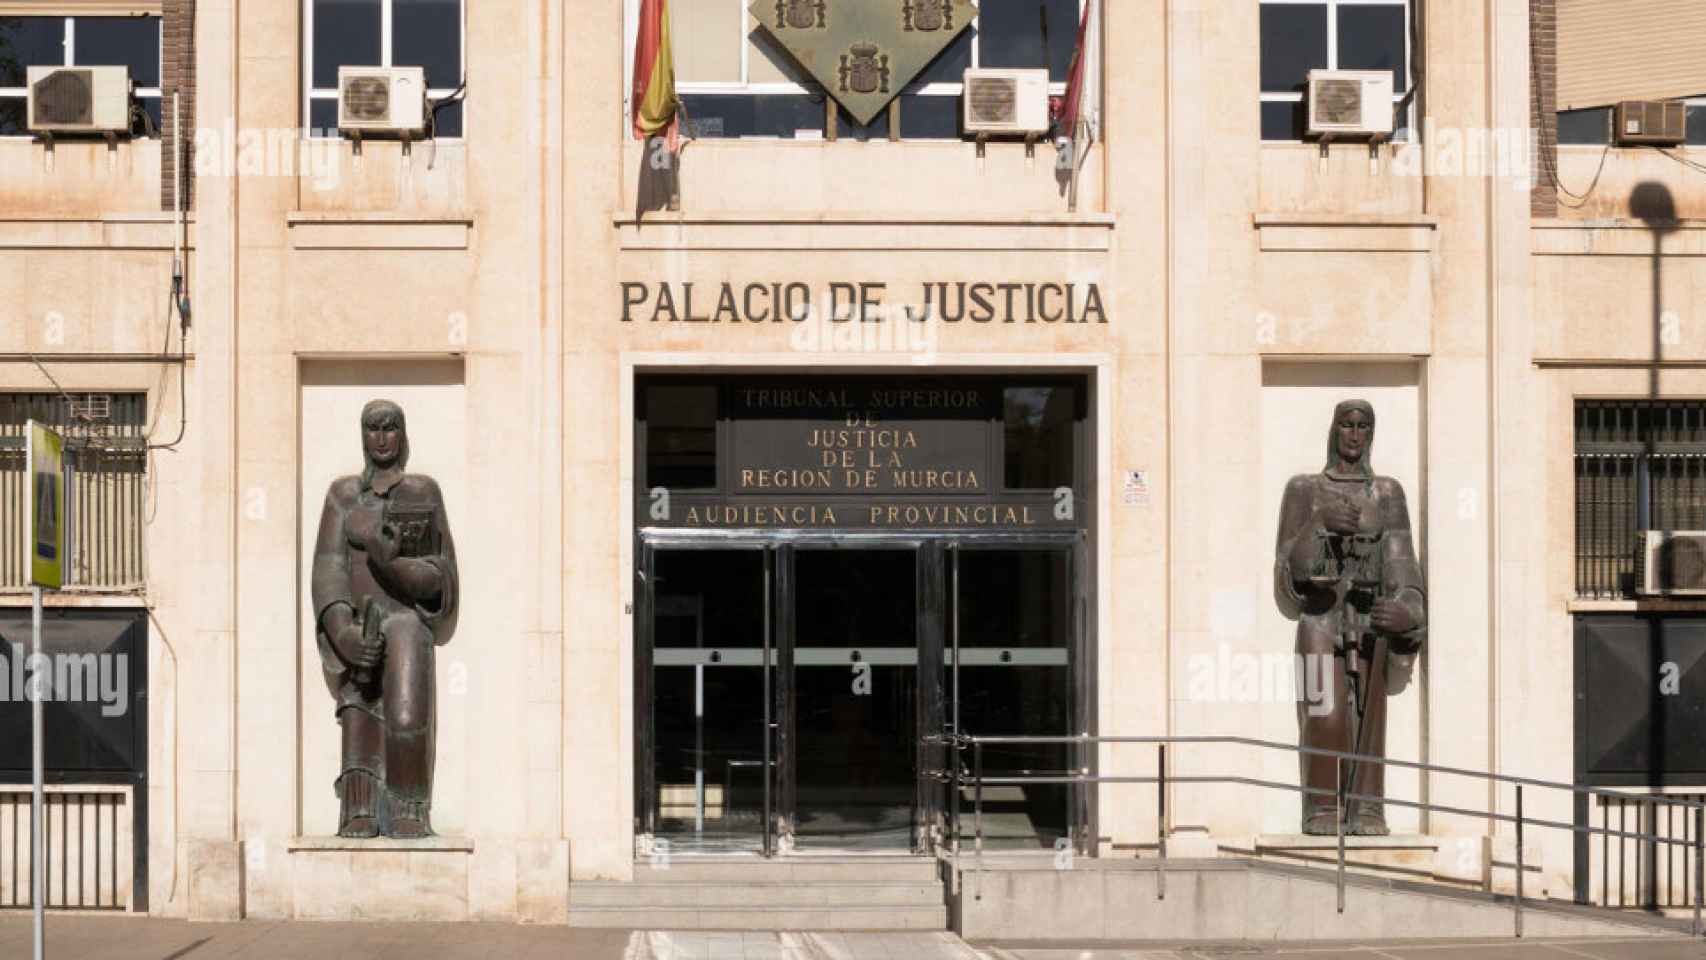 Fachada del Palacio de Justicia que alberga las secciones de la Audiencia Provincial de Murcia.